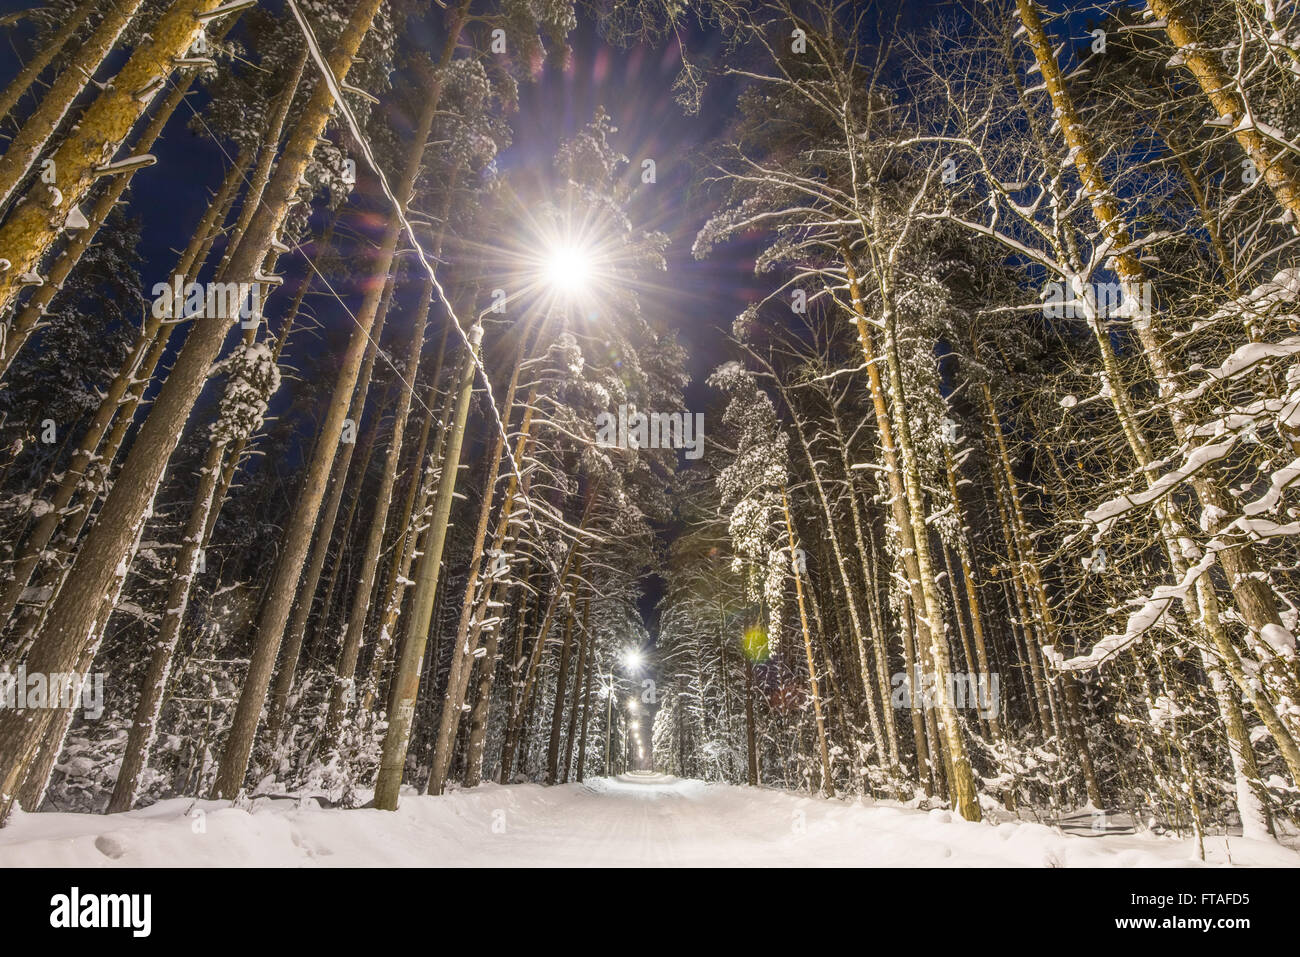 Forêt d'hiver, route et arbres couverts de neige. Scène de nuit, l'éclairage de rue le long de la route. Banque D'Images